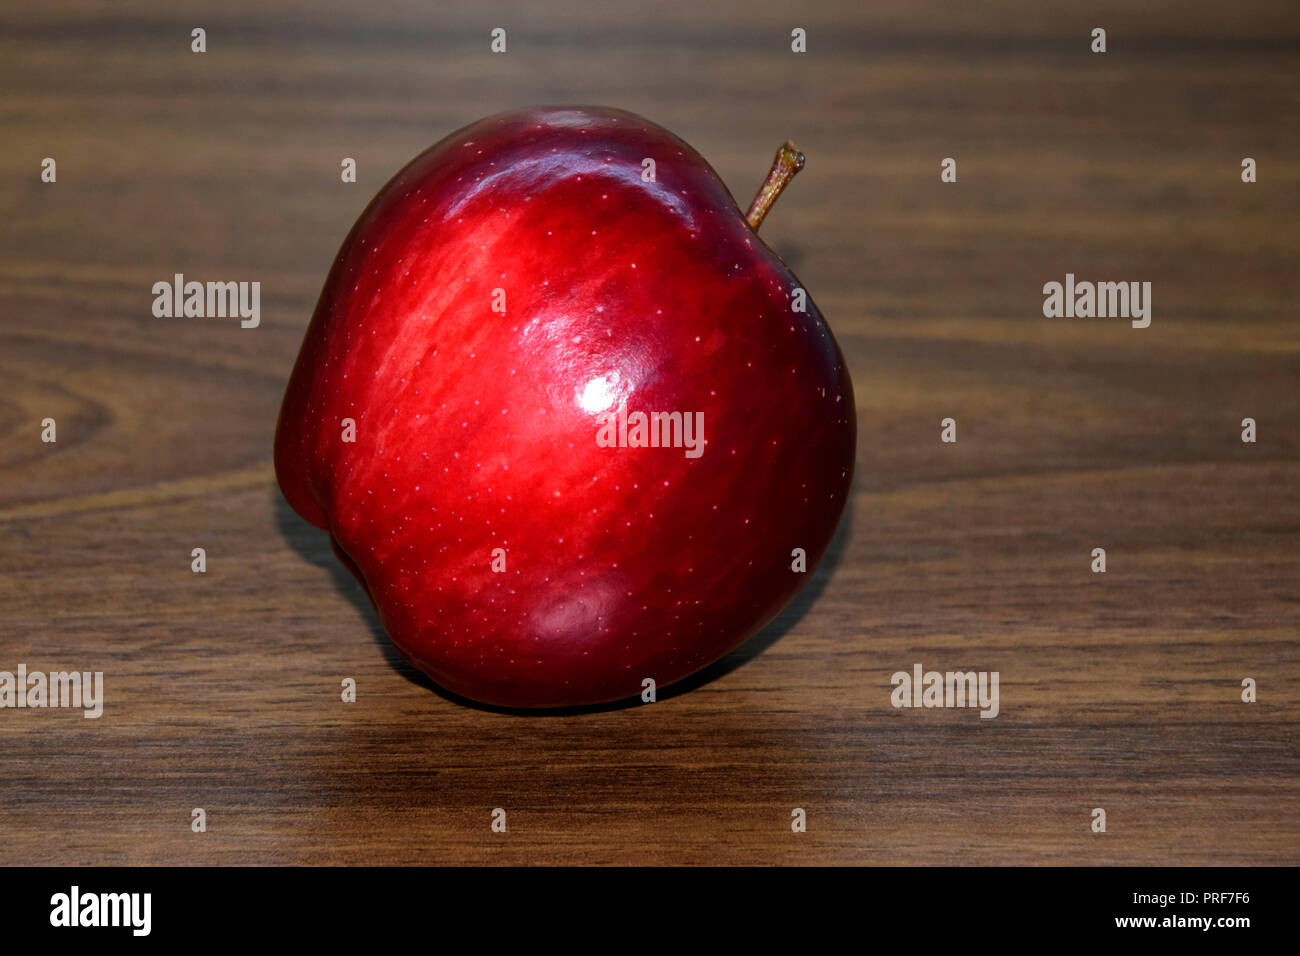 Un brillant, venu la pomme Red Delicious lain incliné sur le bureau en bois brun, close-up vue latérale. Banque D'Images